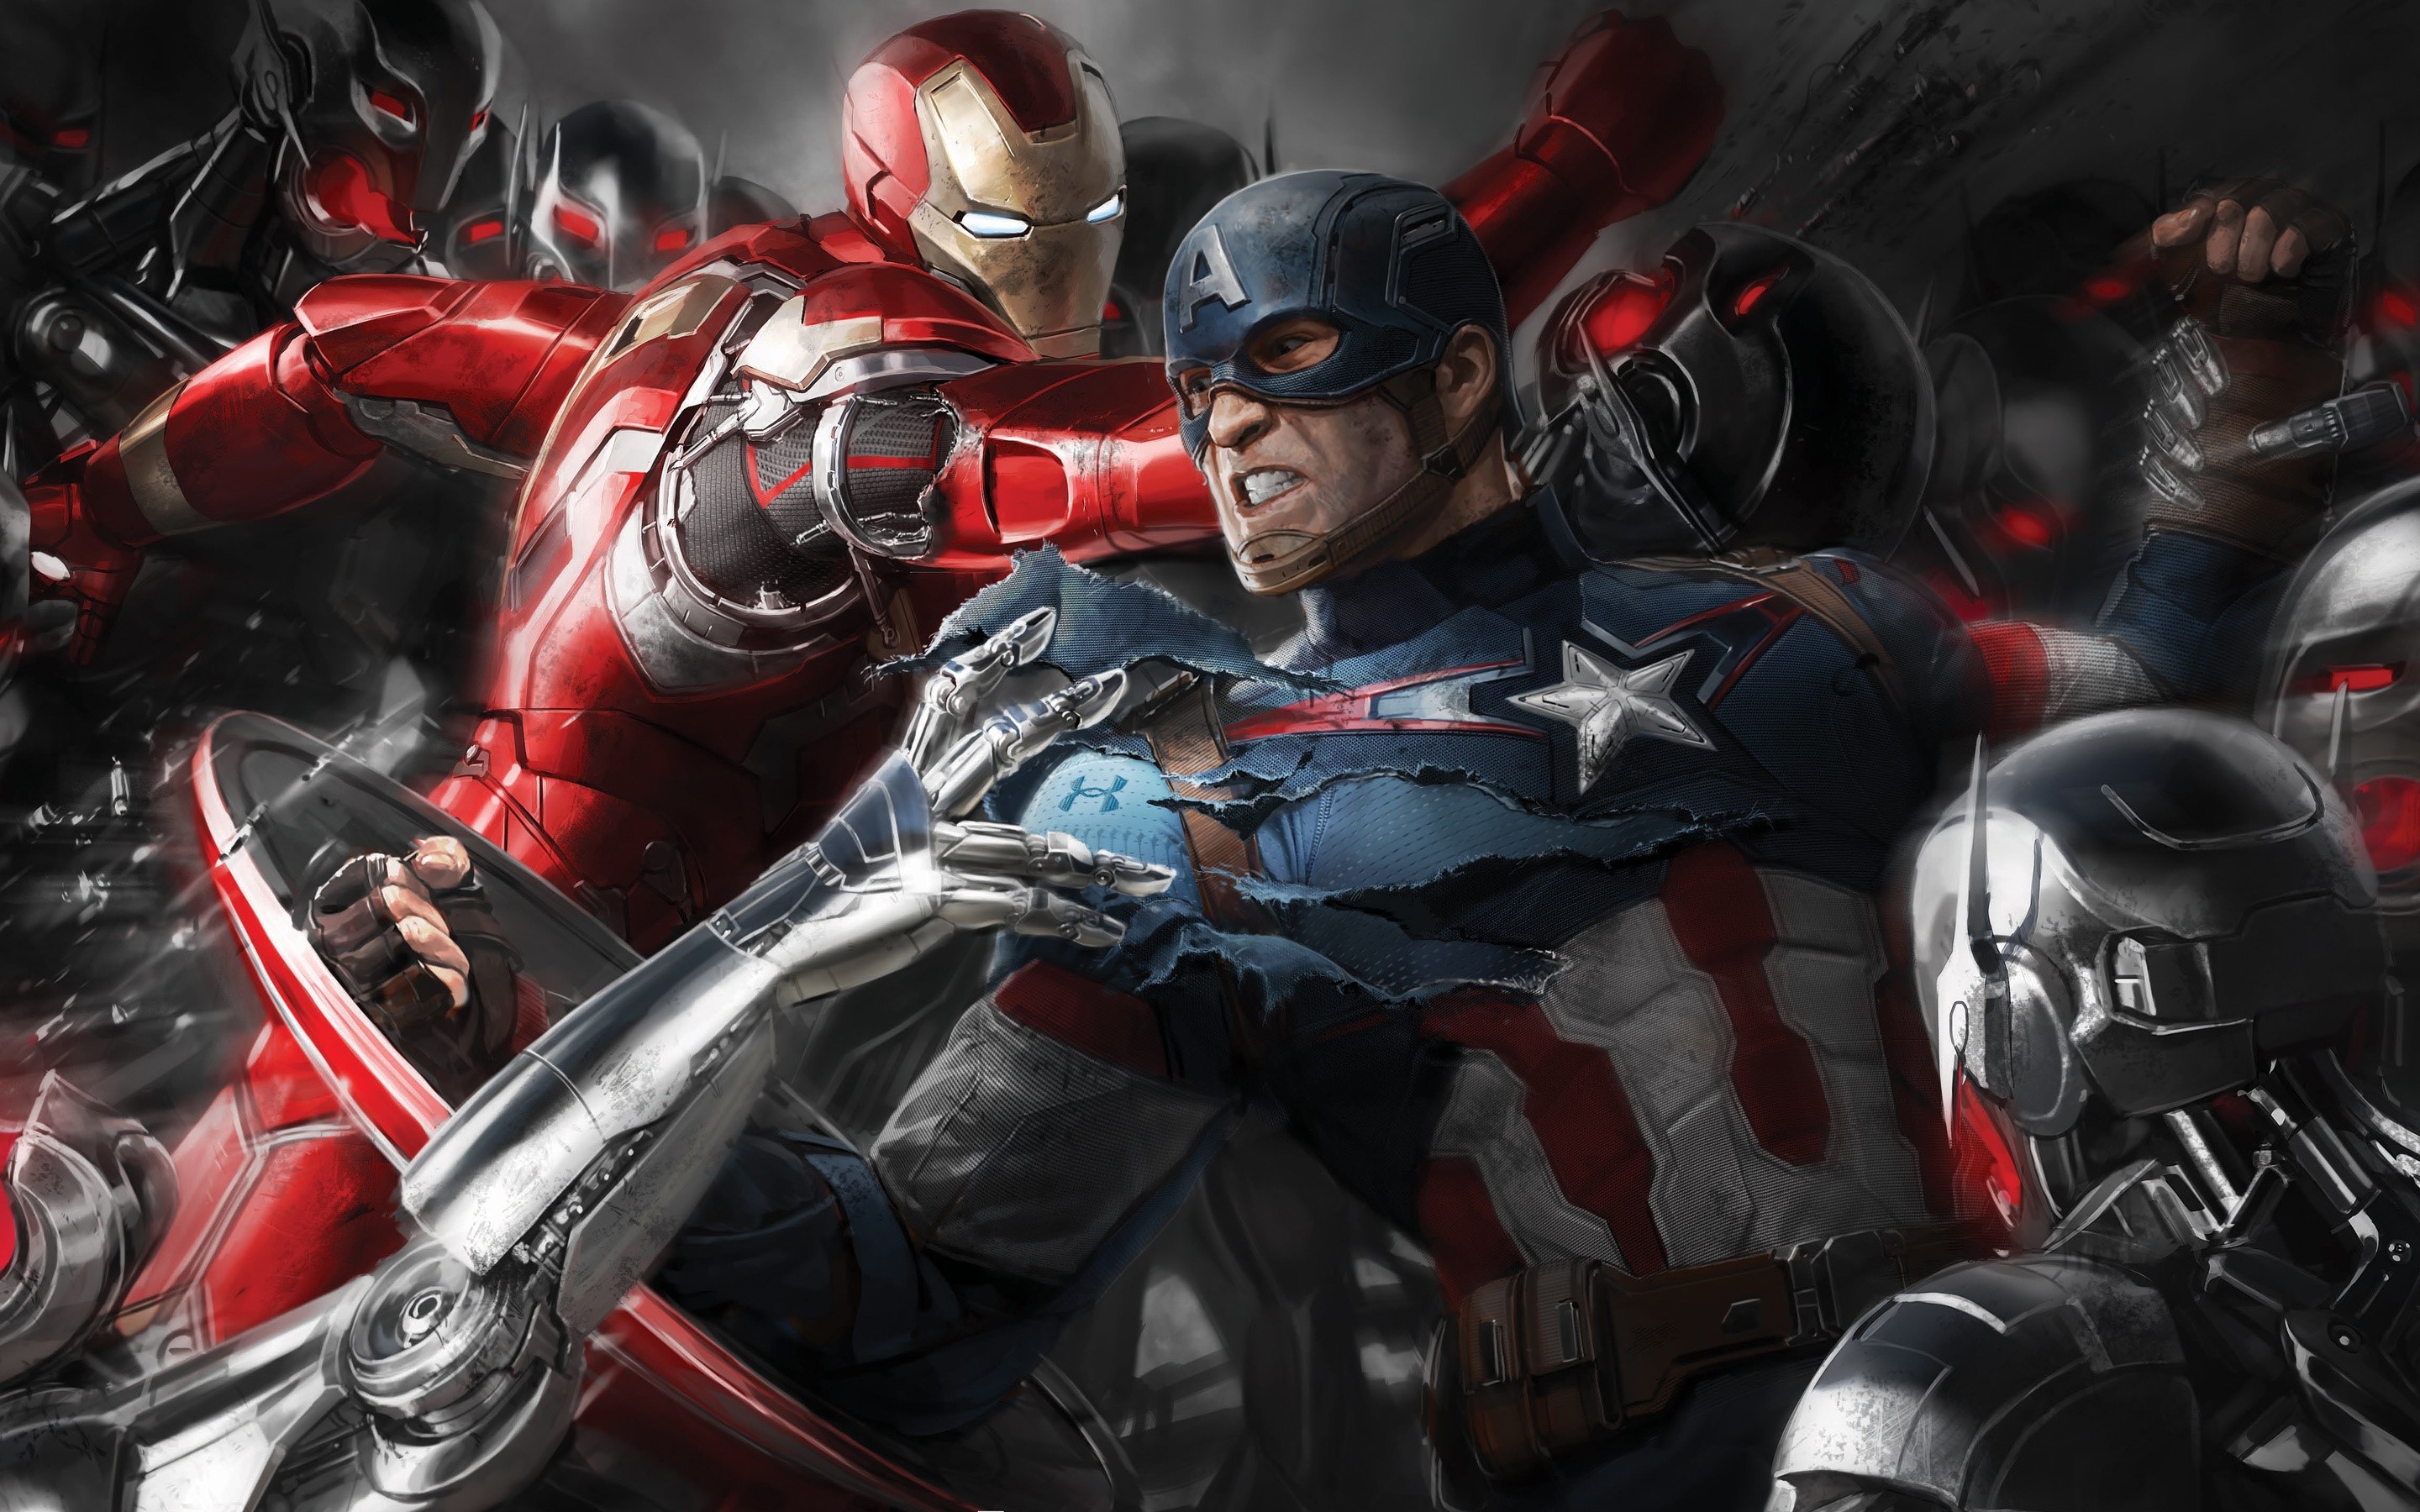 Wallpaper Design of The Avengers